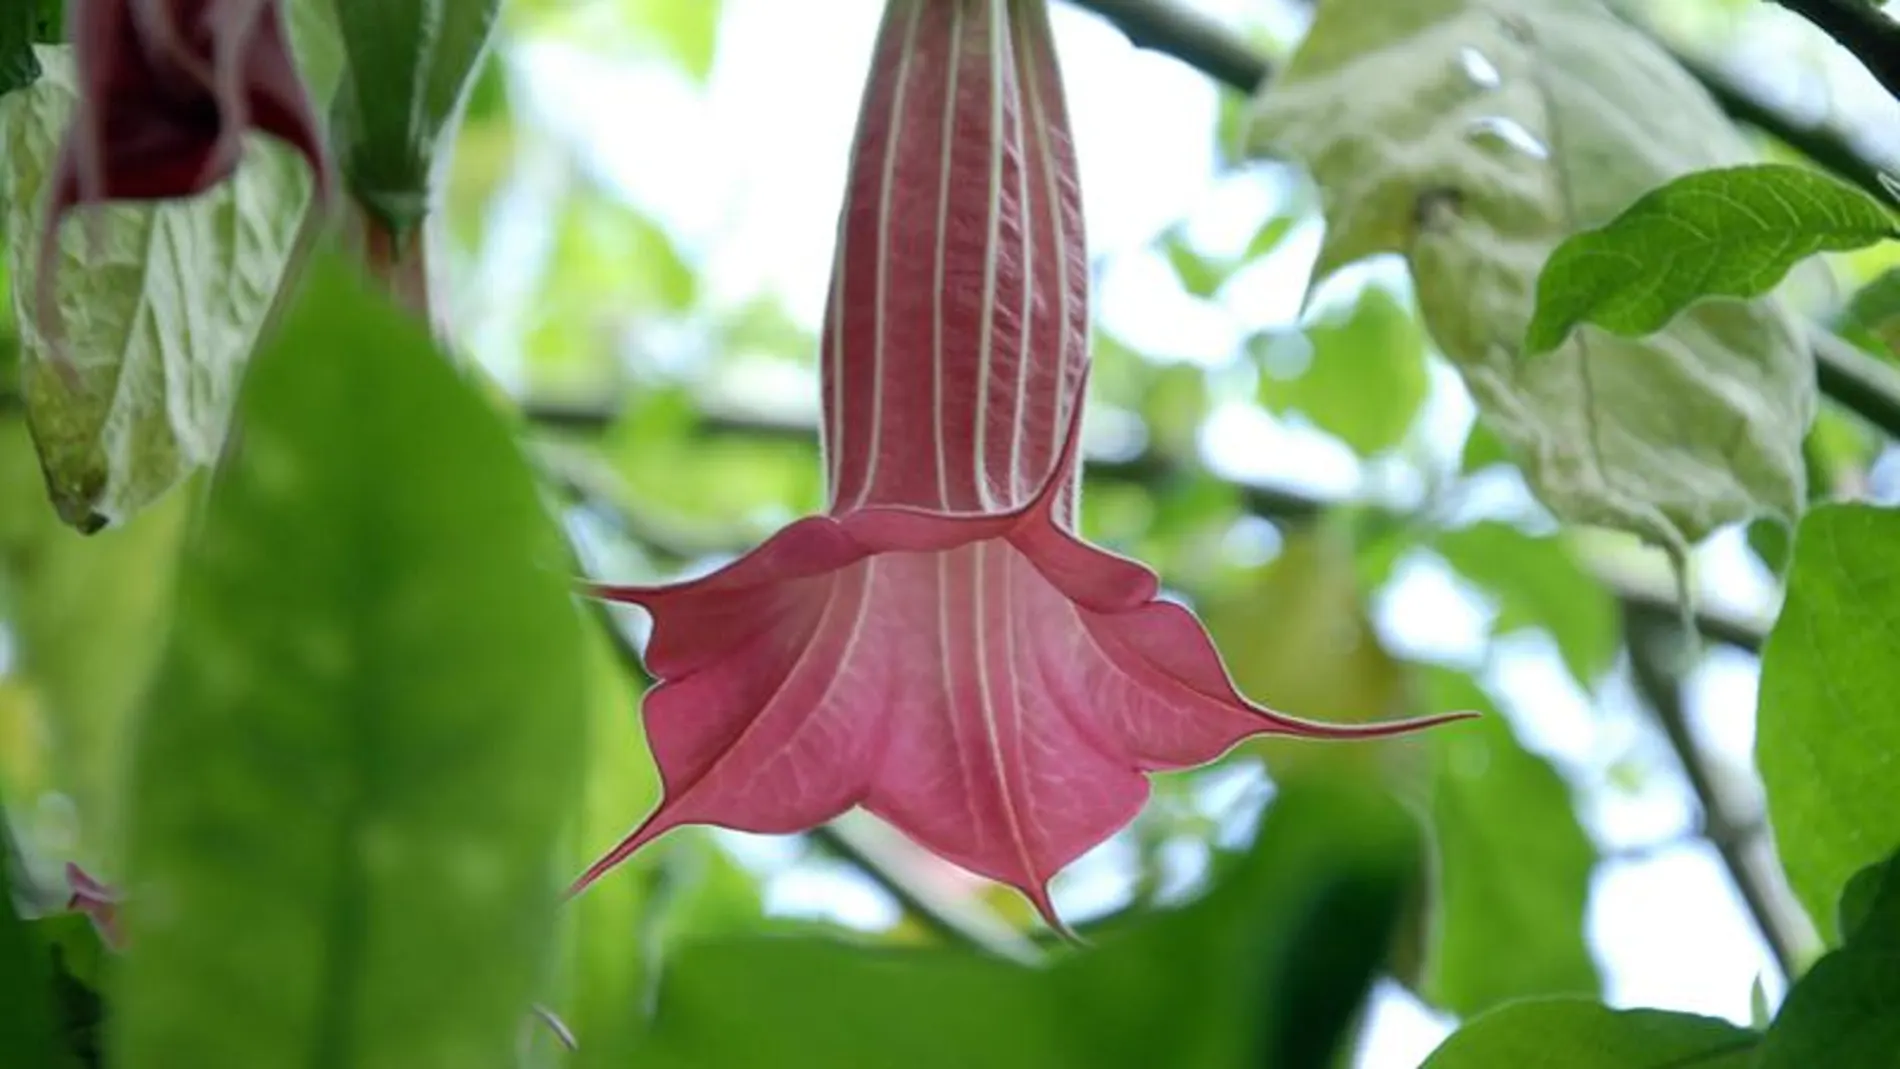 Vista de la flor de la brugmansia o floripondio, una planta que esconde en su interior la escopolamina o "burundanga".